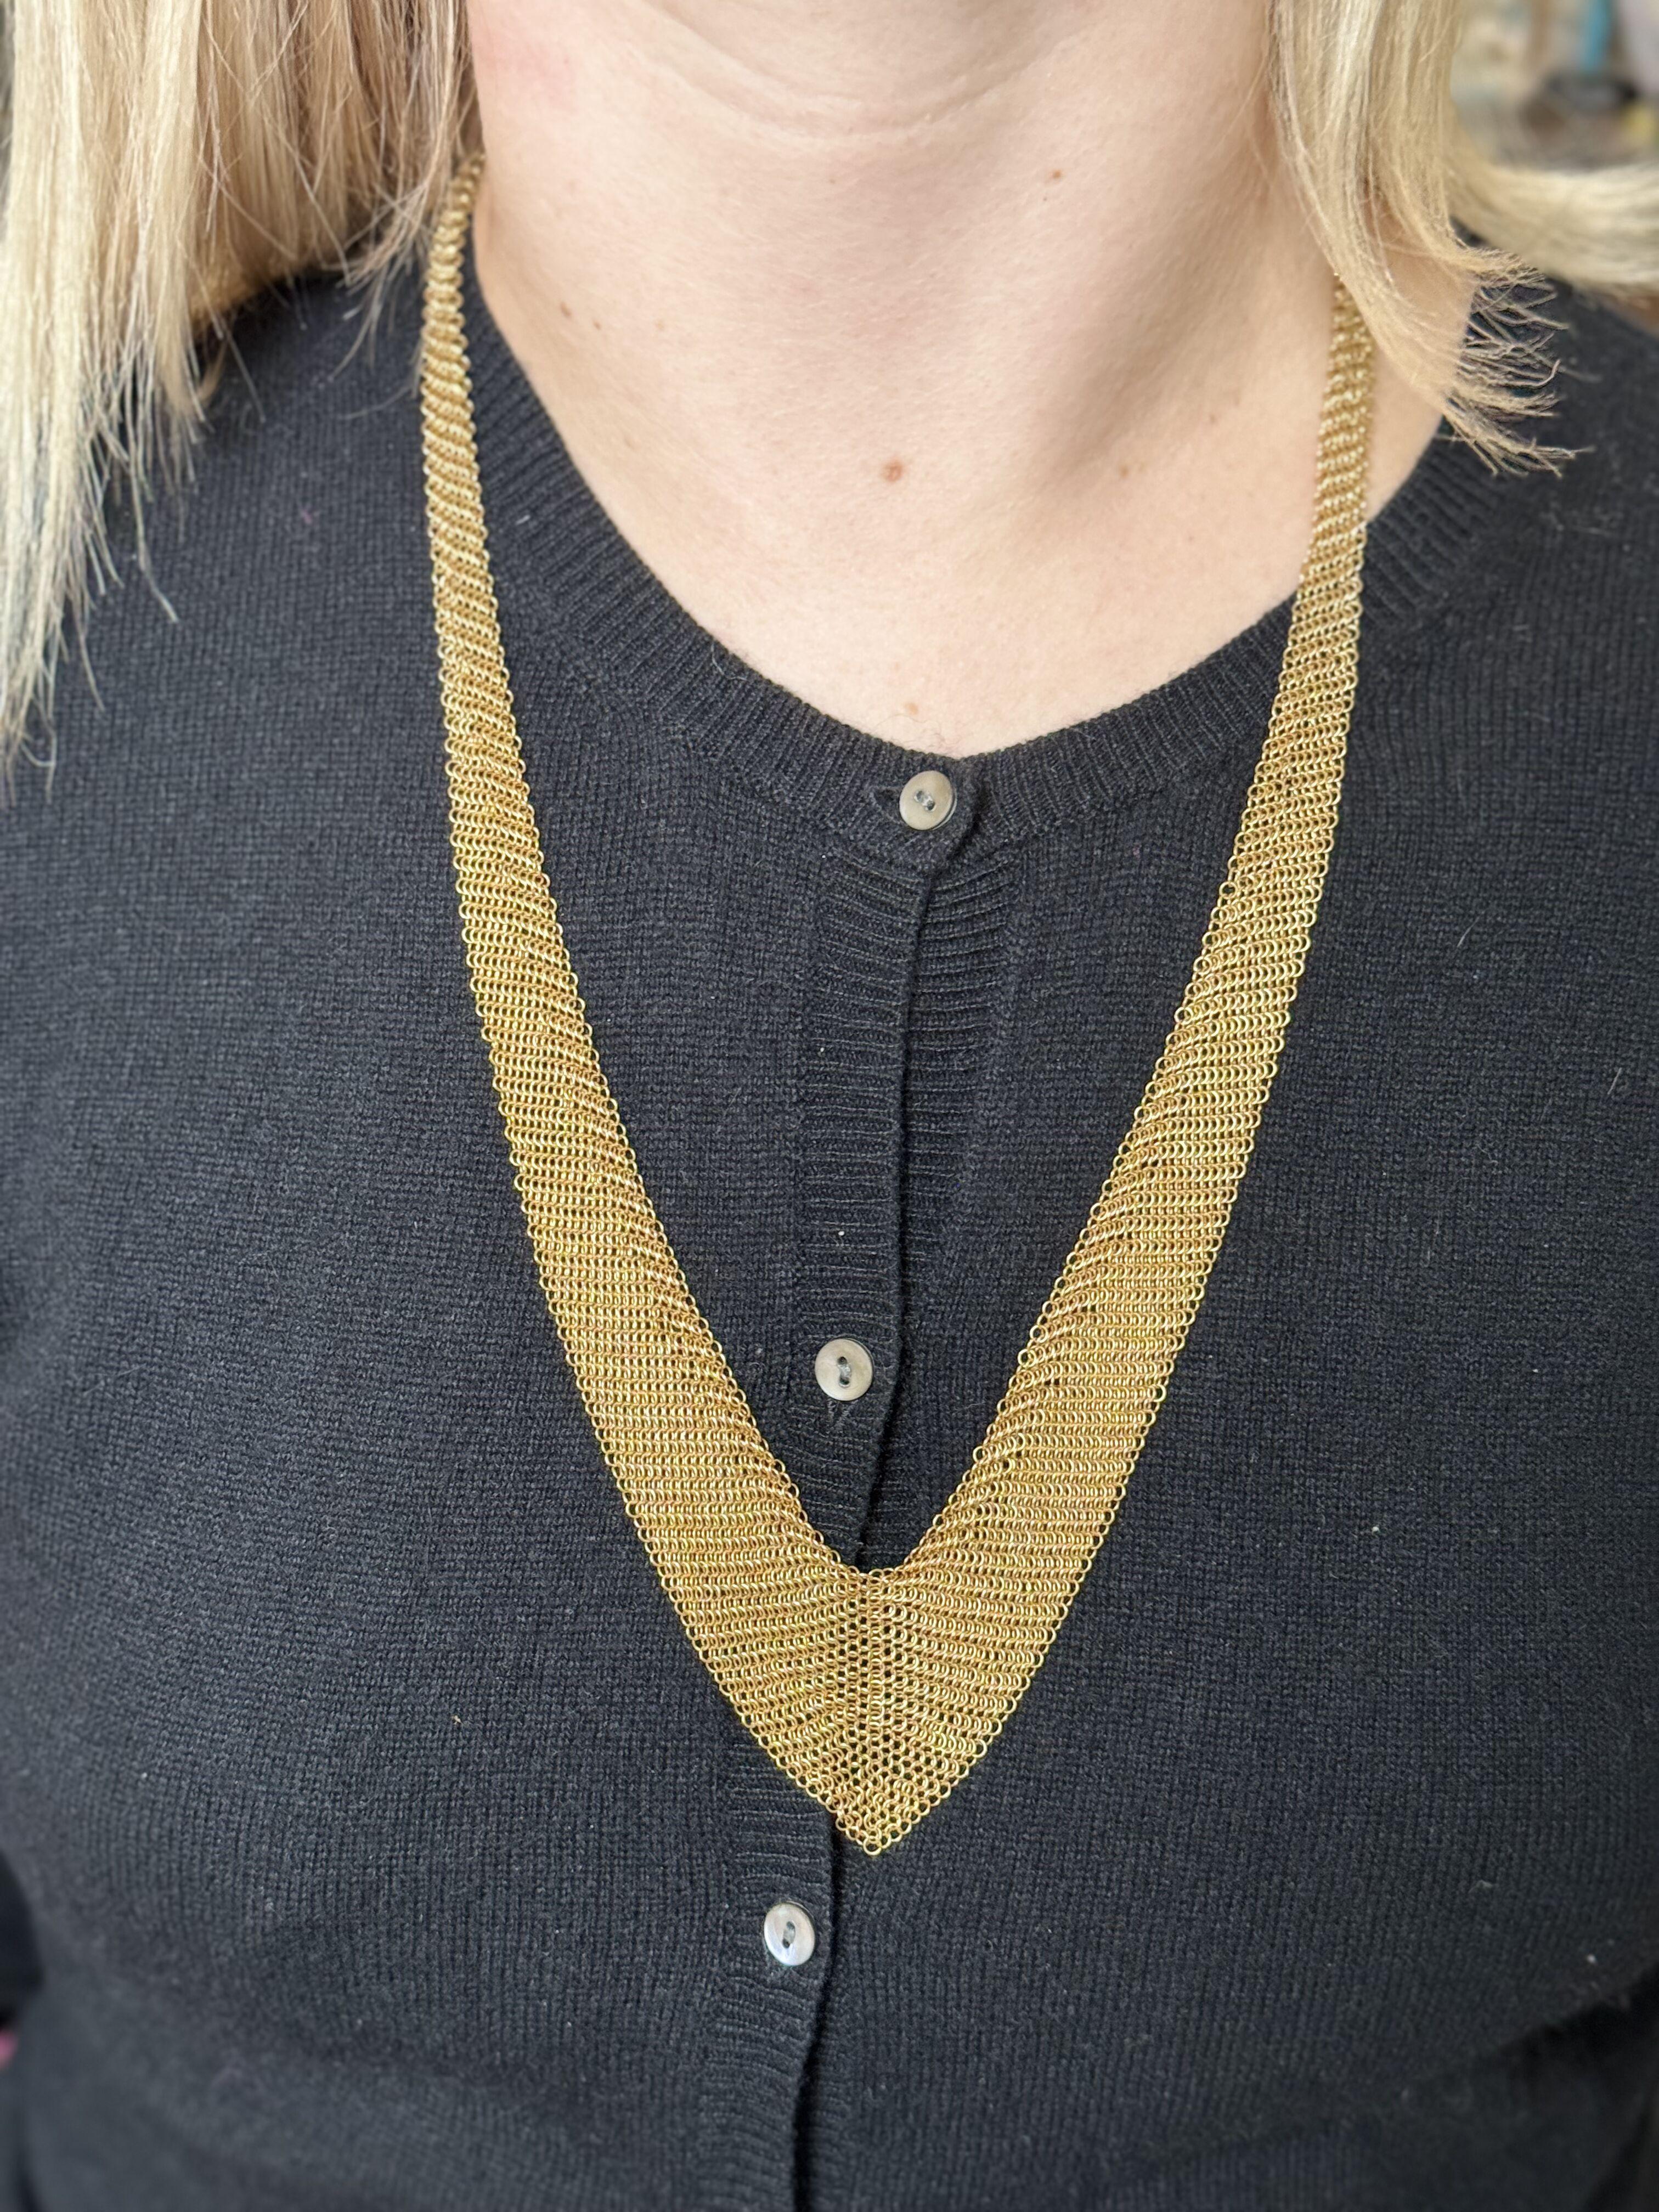 Ikonische Halskette aus 18-karätigem Gelbgold, entworfen und kreiert von Elsa Peretti für Tiffany & Co. Halskette ist 27